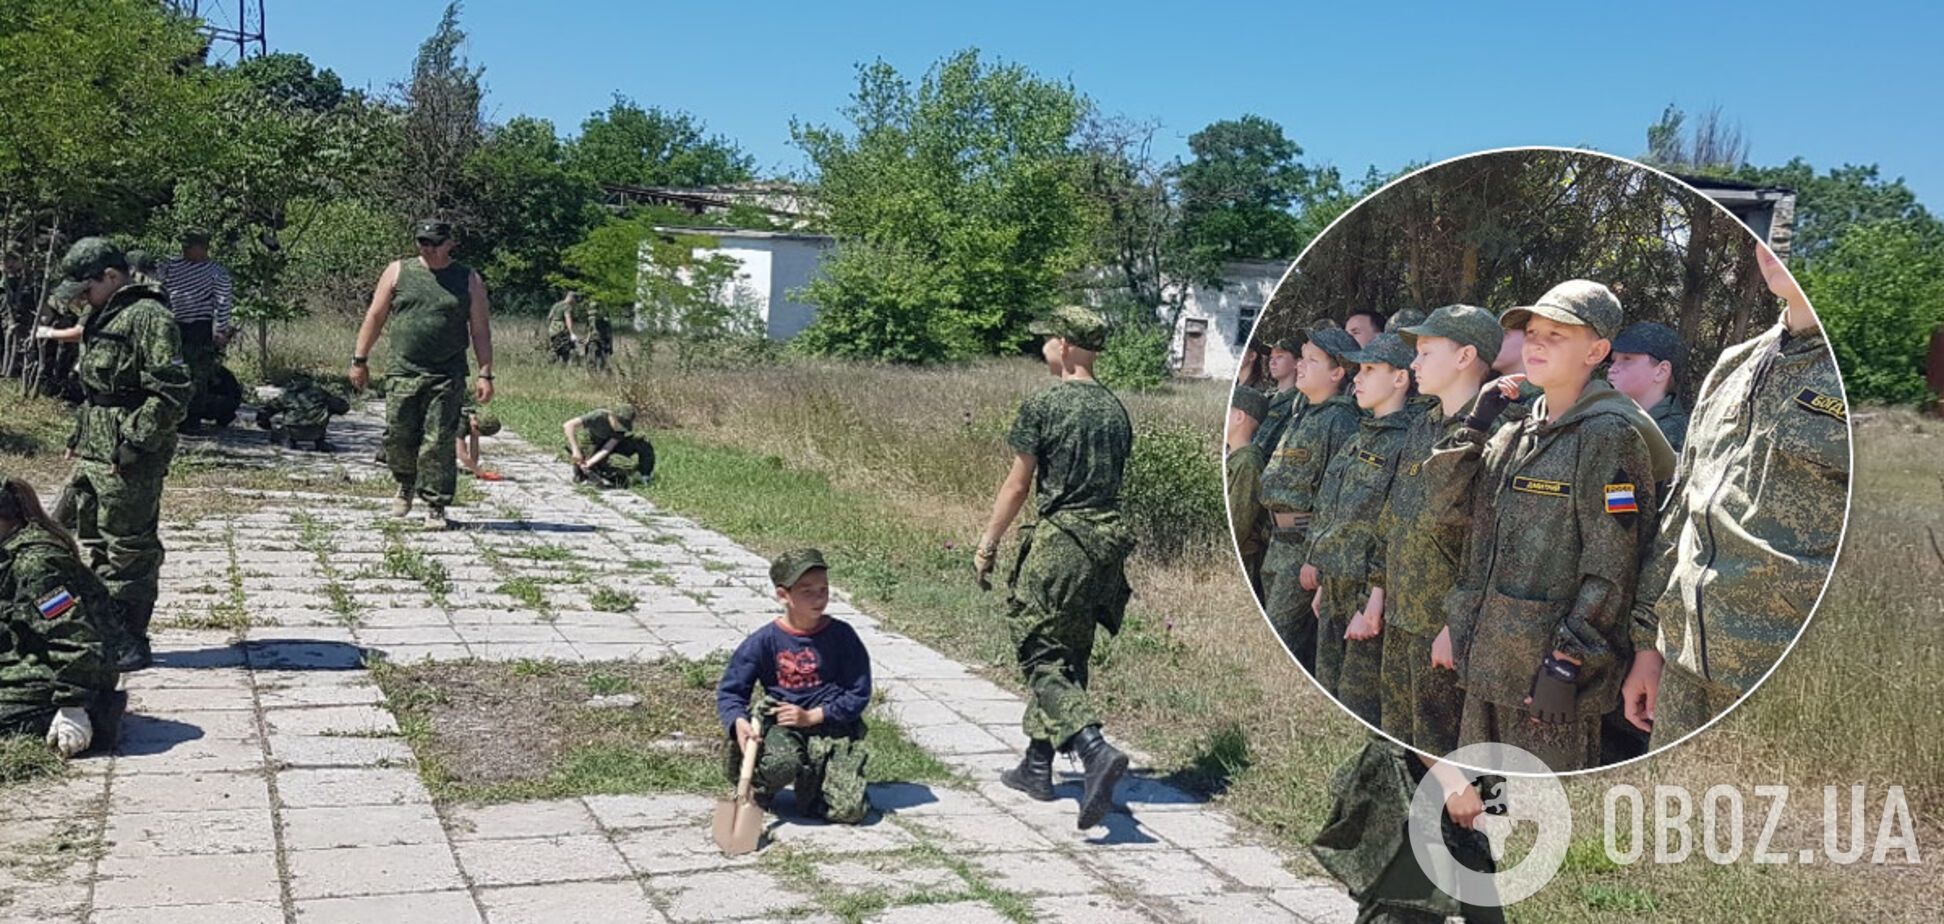 В Крыму детям устроили 'трудодень' в военной форме РФ: сеть возмутилась. Фото